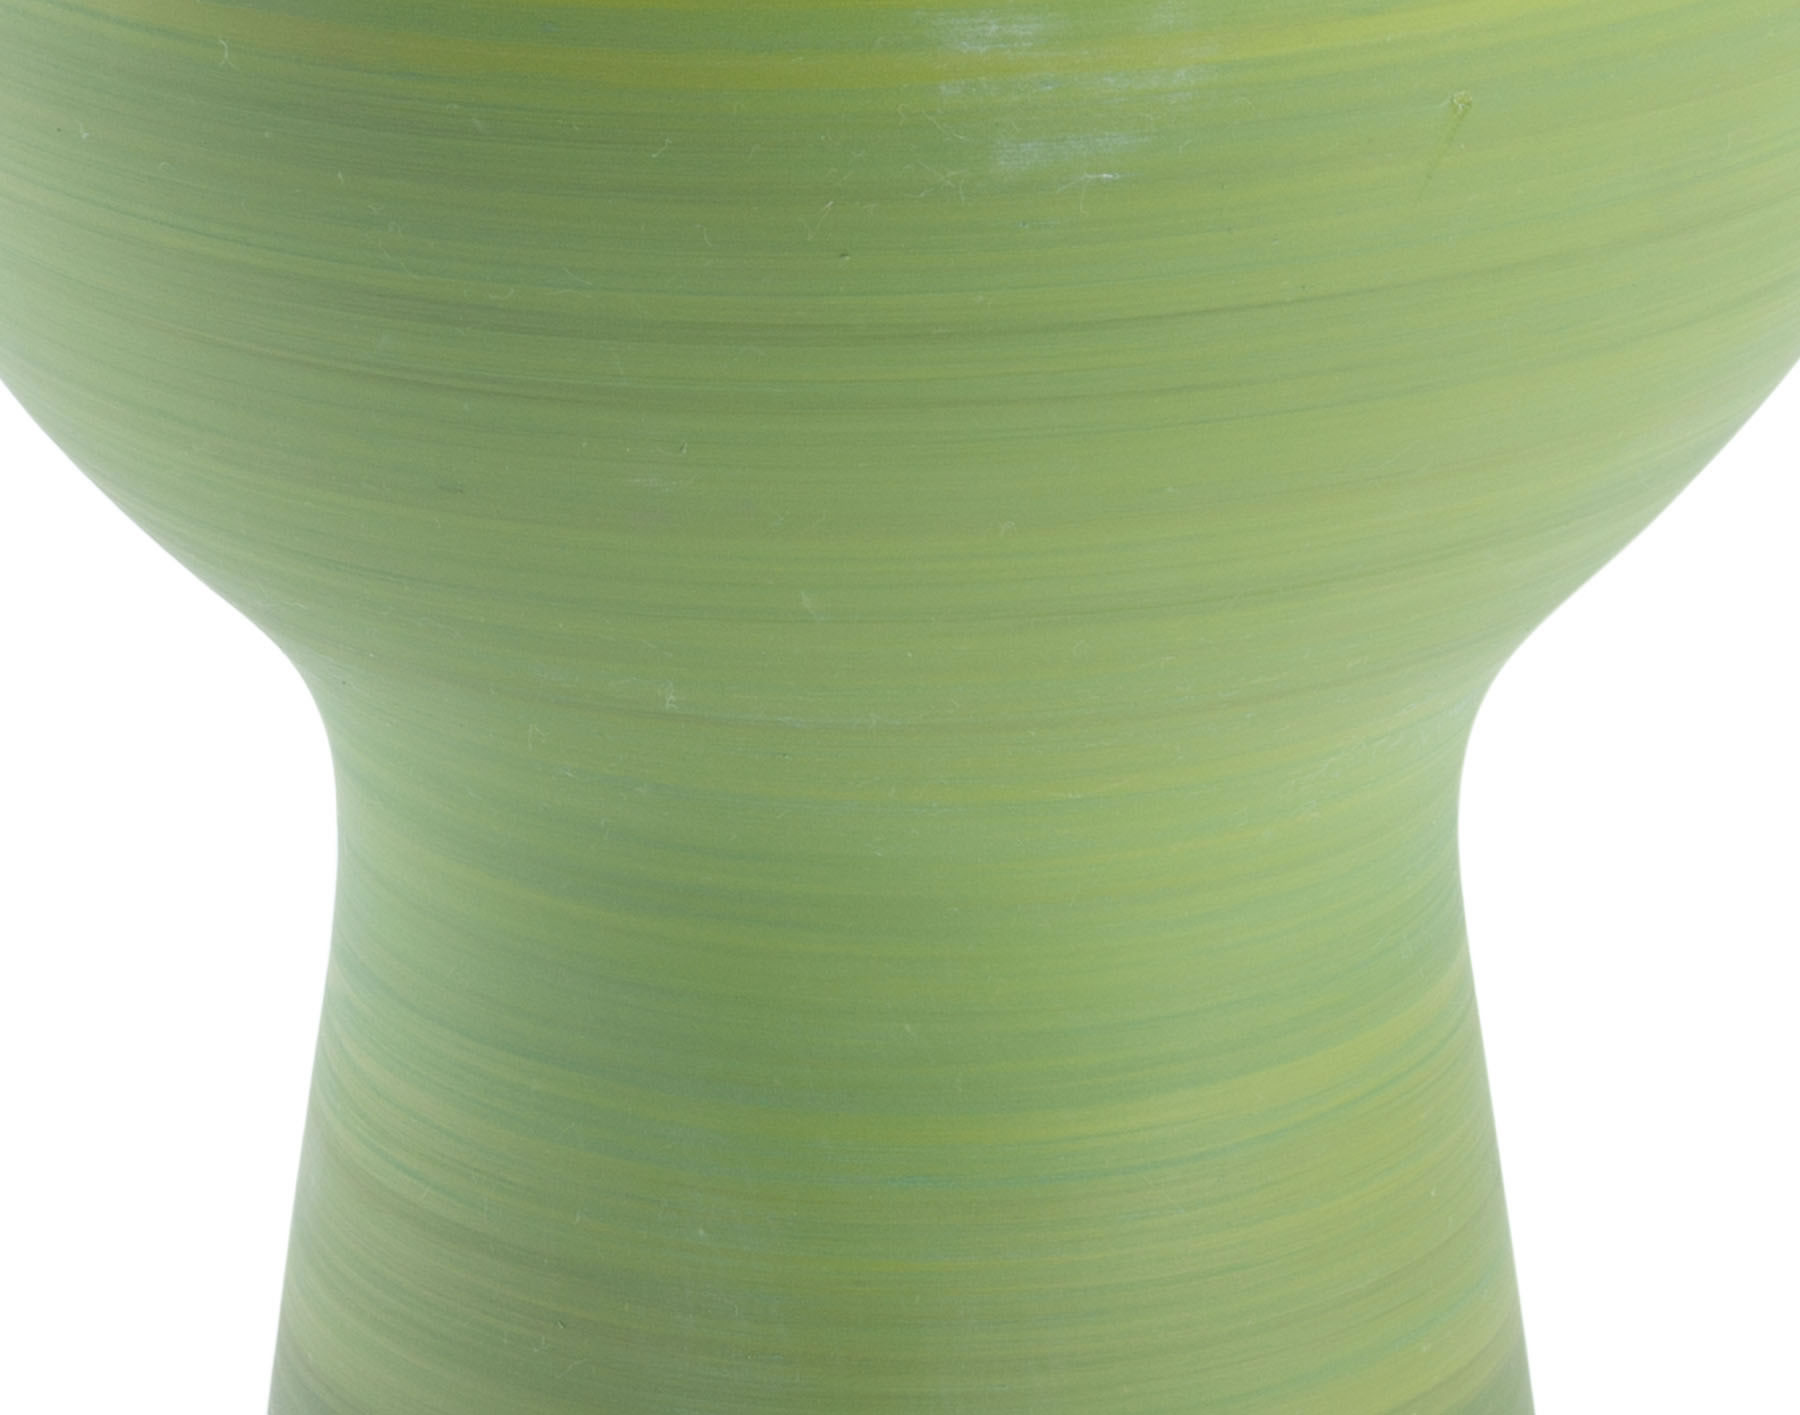 8.7" x 8.7" x 9.8" Green, Ceramic, Short Vase